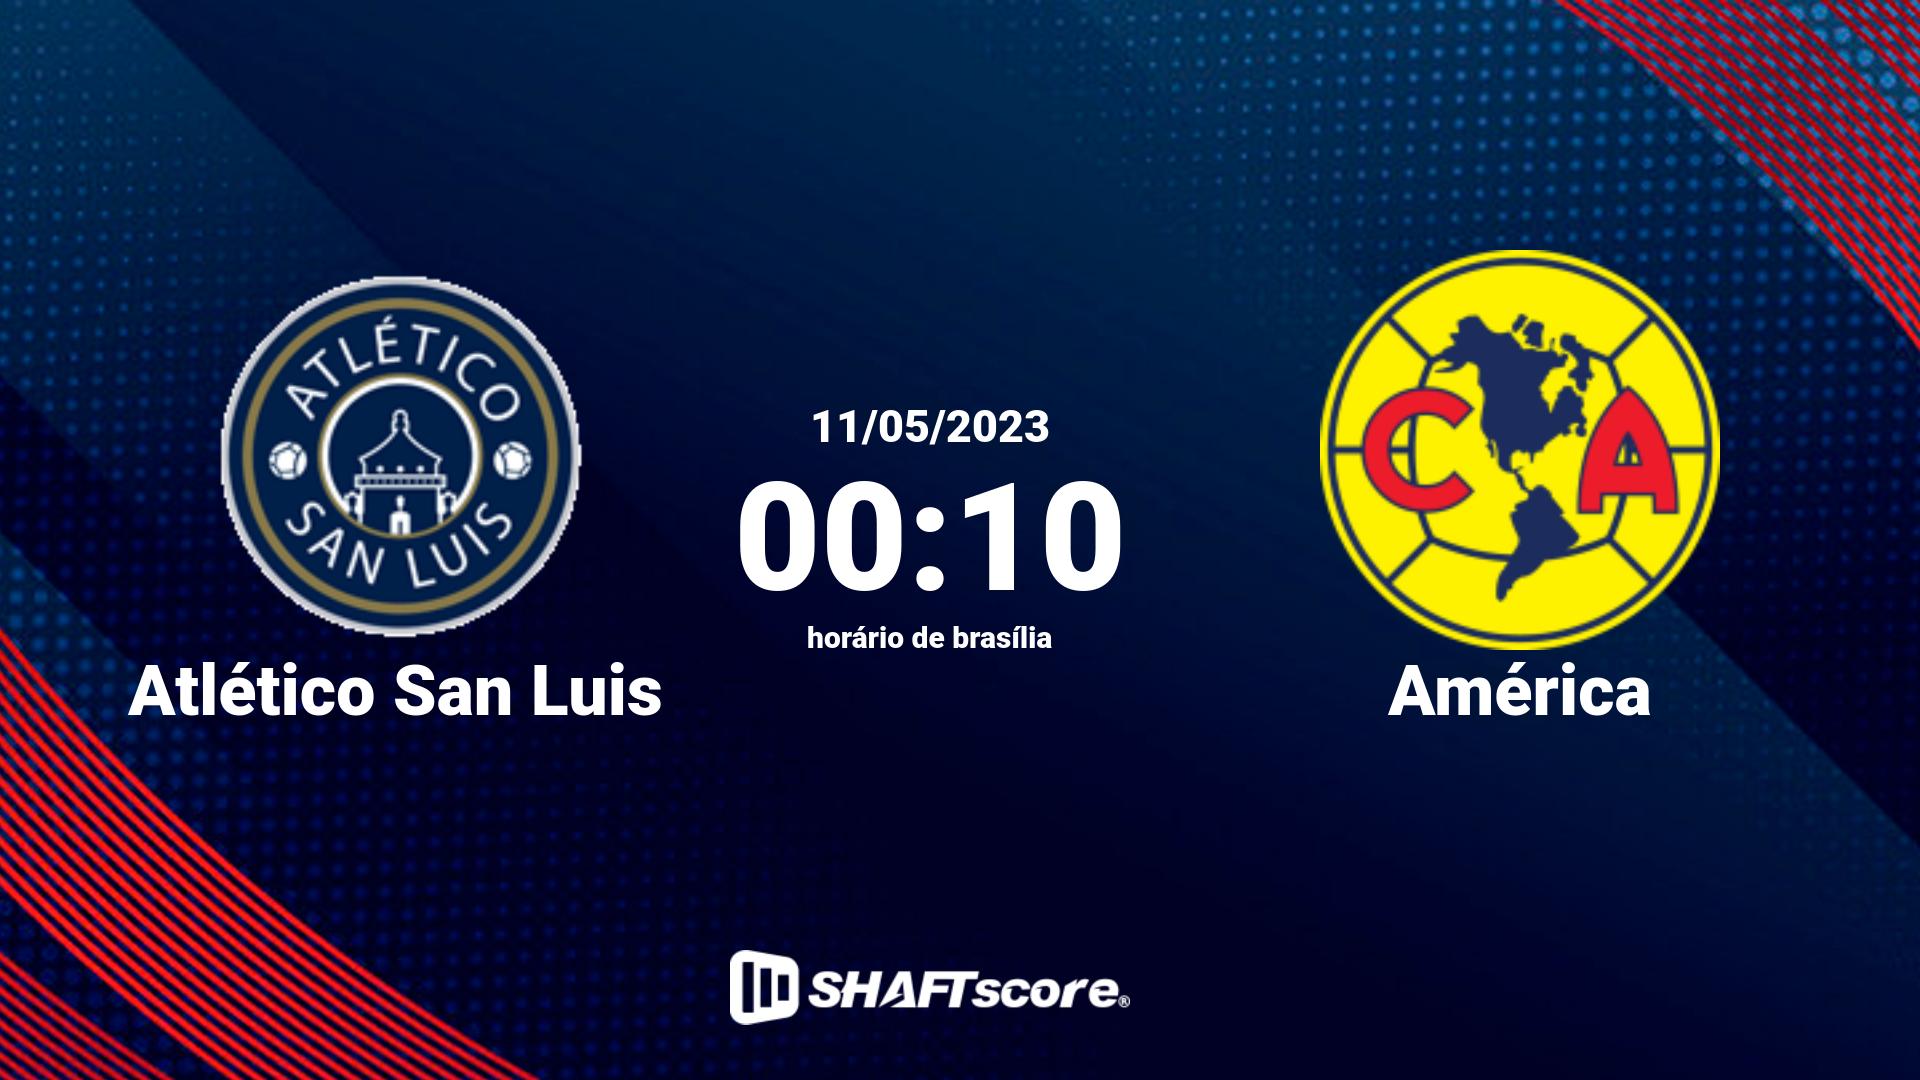 Estatísticas do jogo Atlético San Luis vs América 11.05 00:10